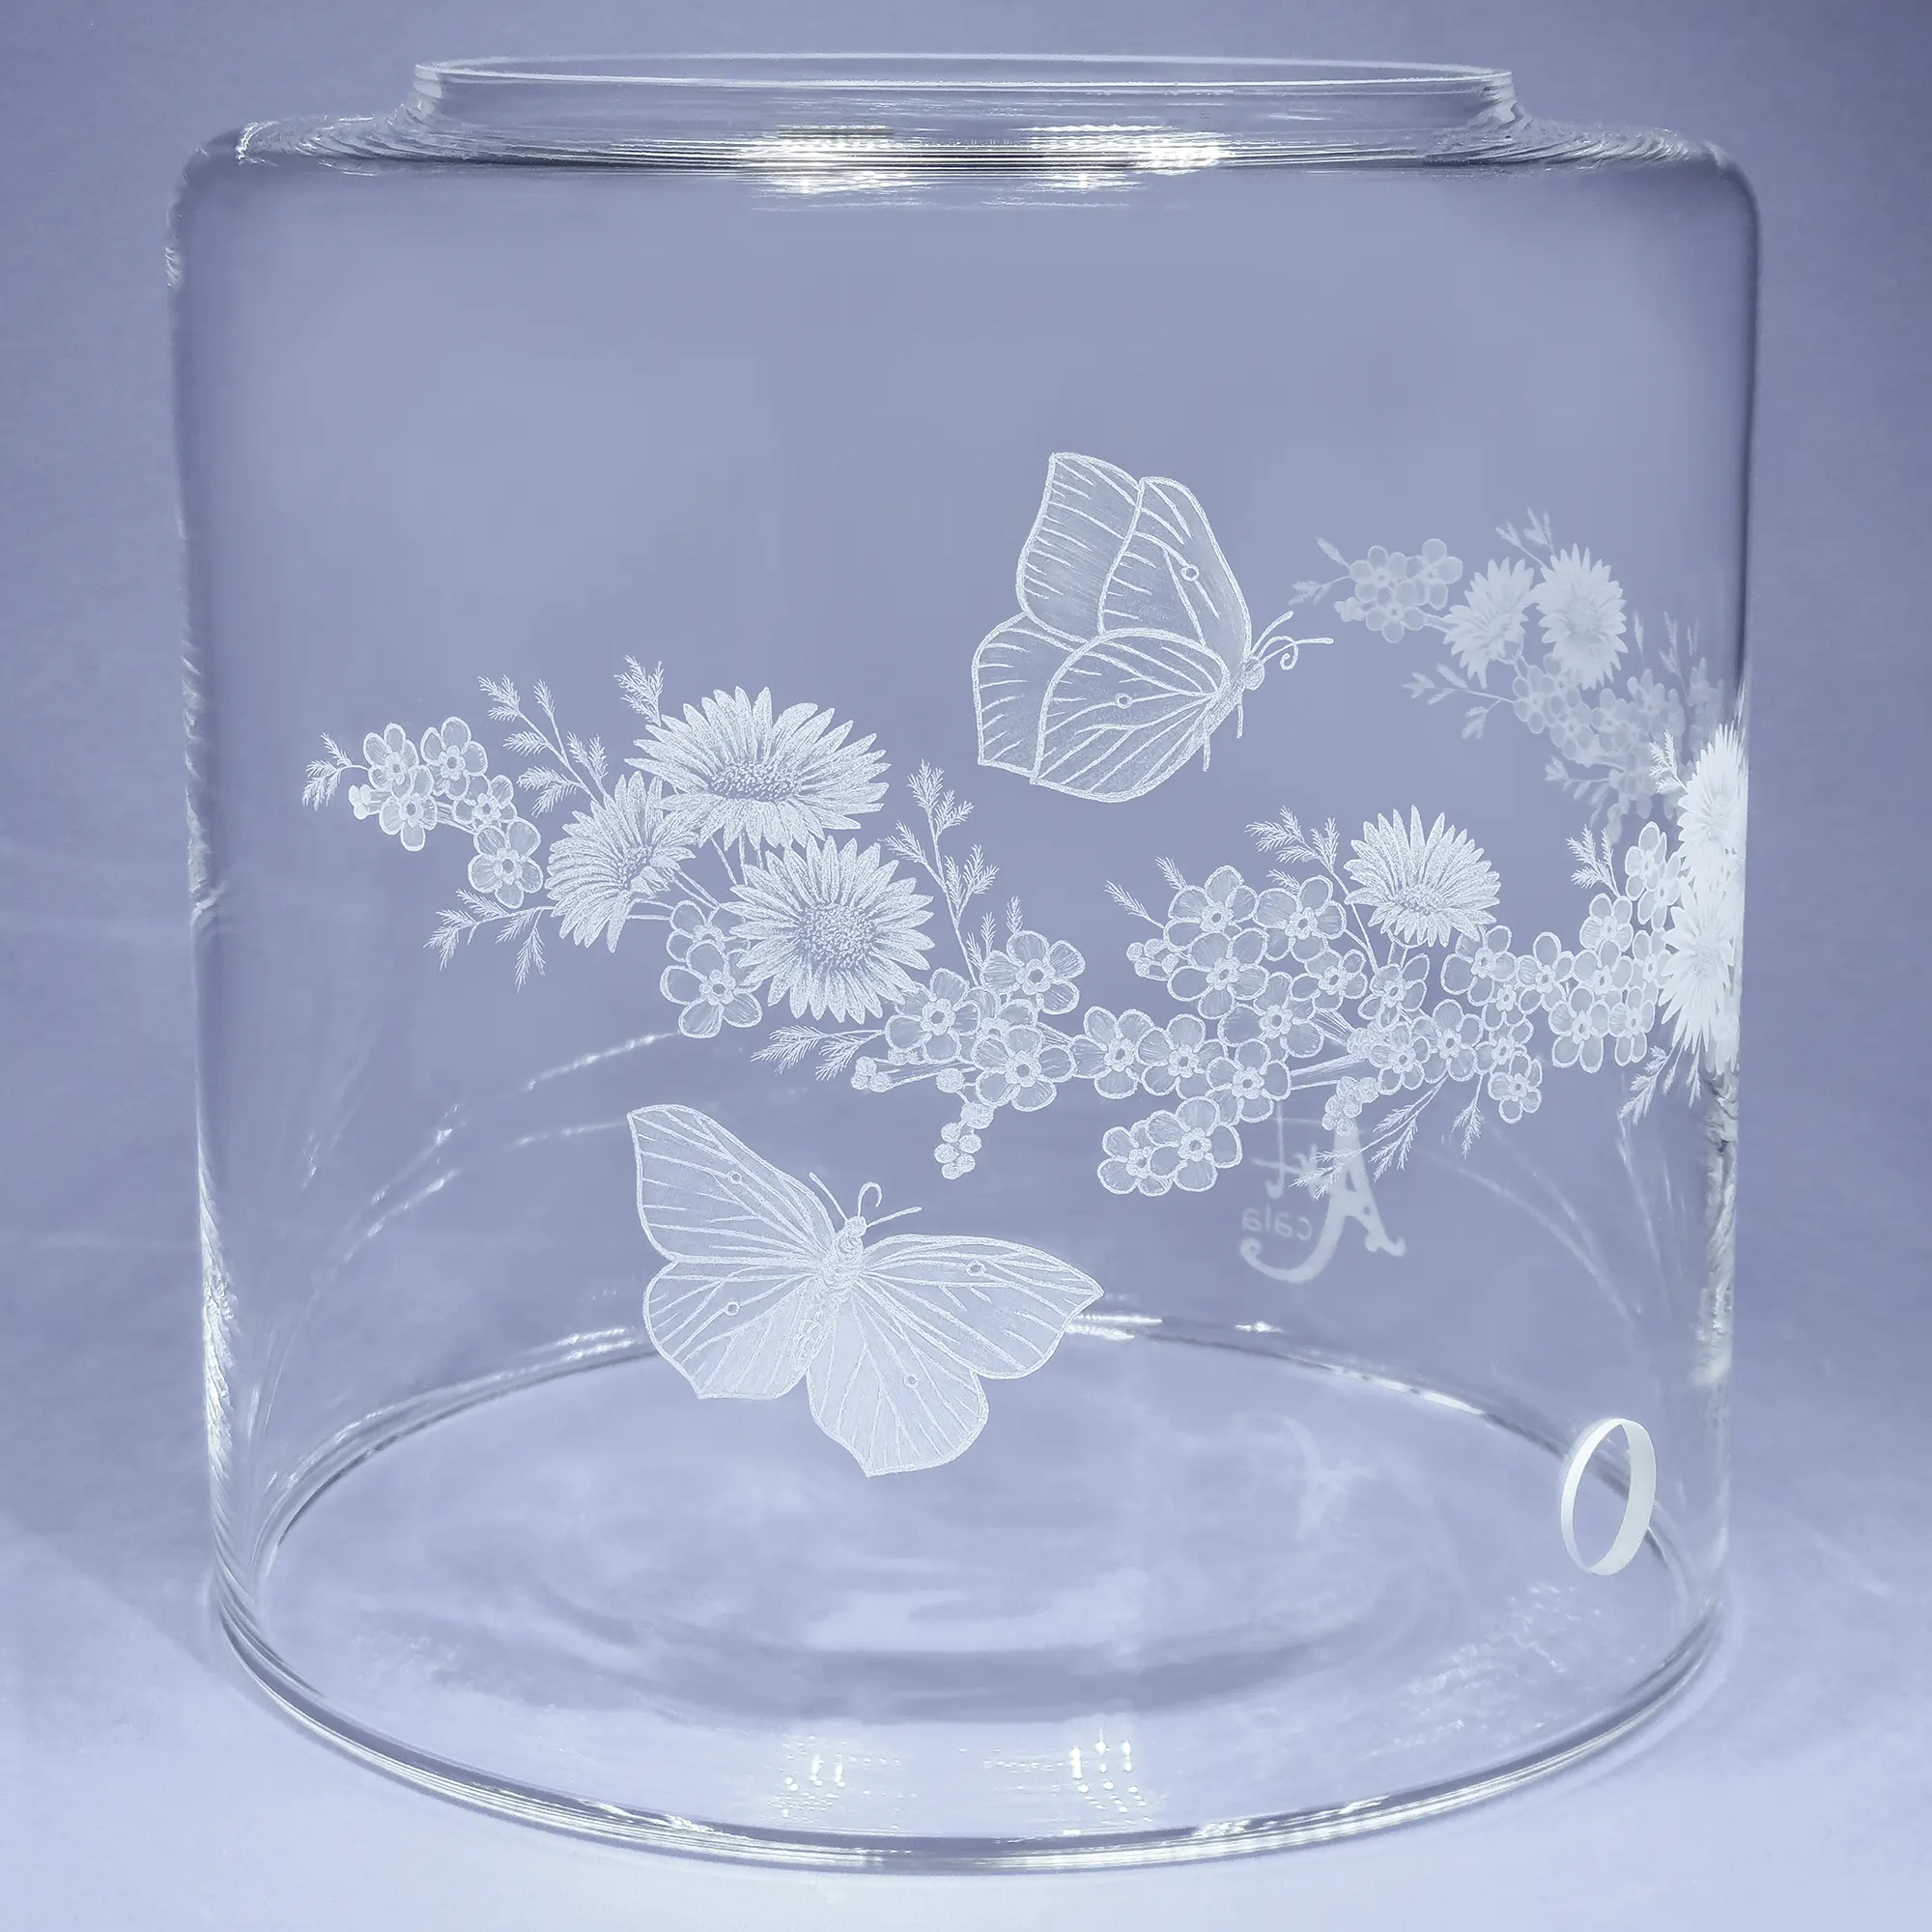 Vorratstank aus Glas für einen Acala Wasserfilter in klarem Glas mit dem gravierten Kranz,umlaufende um das runde Glas.In dem Granz sind Vergissmeinnicht, Schmetterlinge und Gänseblümchen.Linke Ansicht.